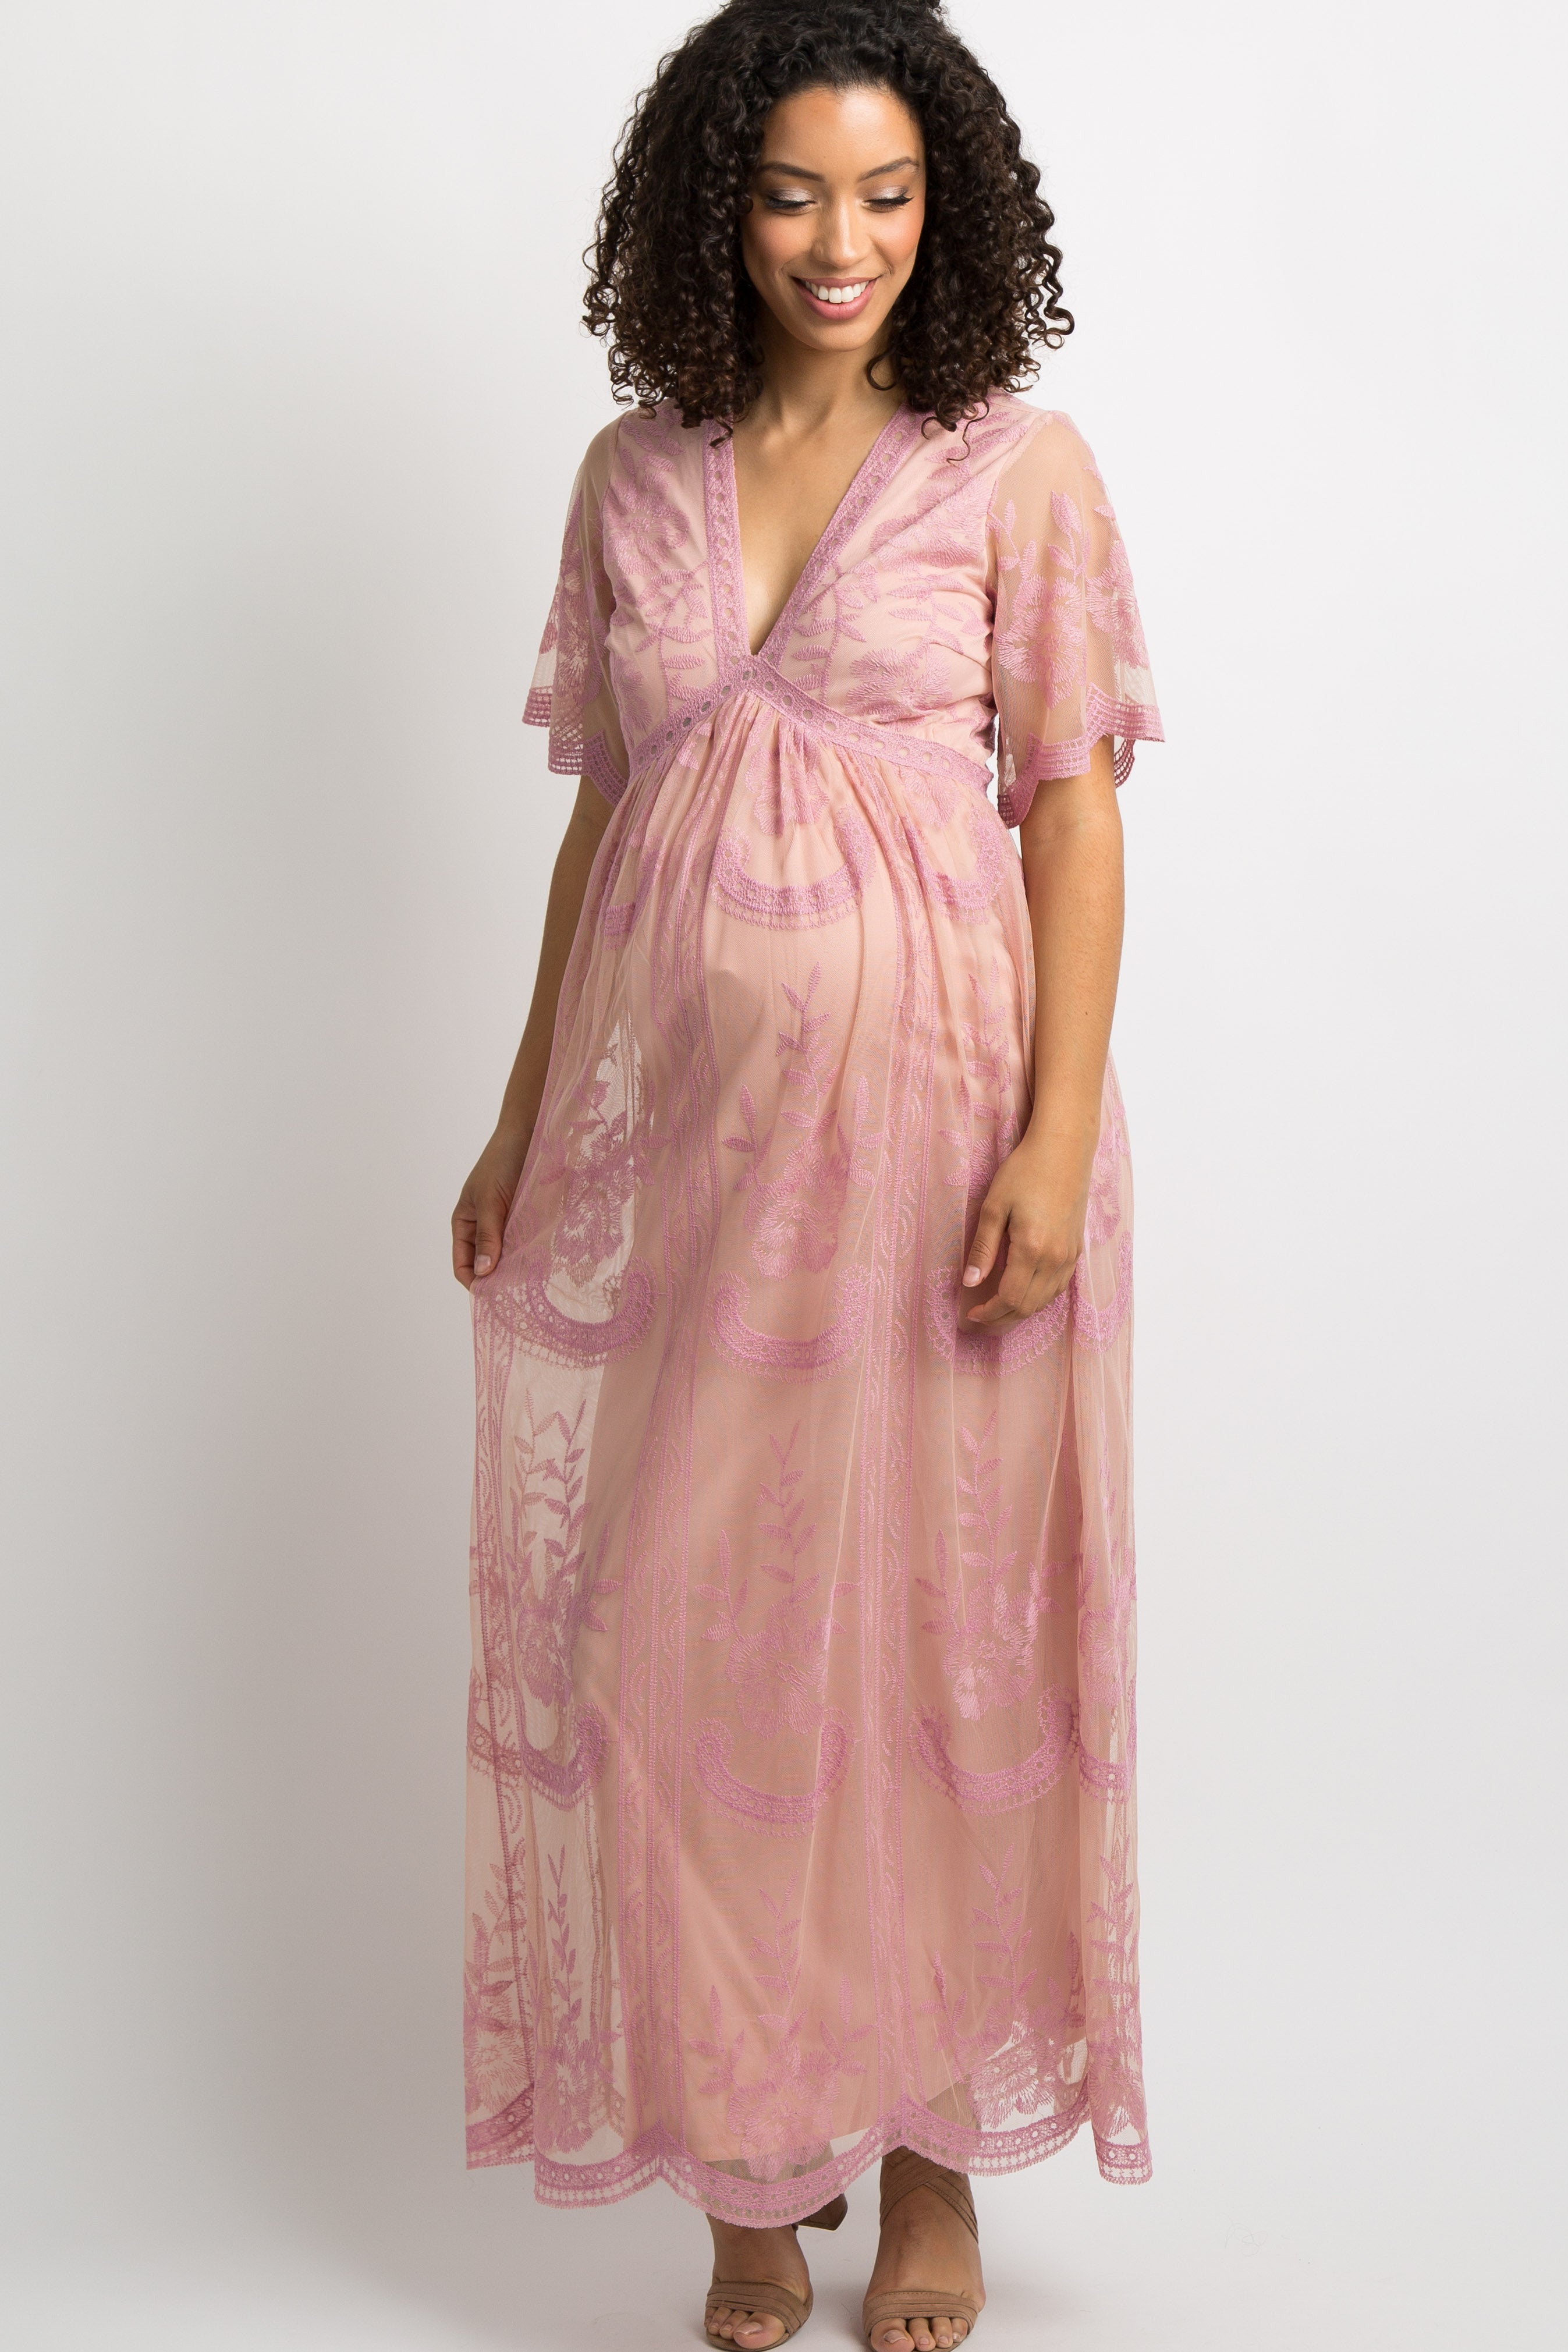 pink blush maternity dress